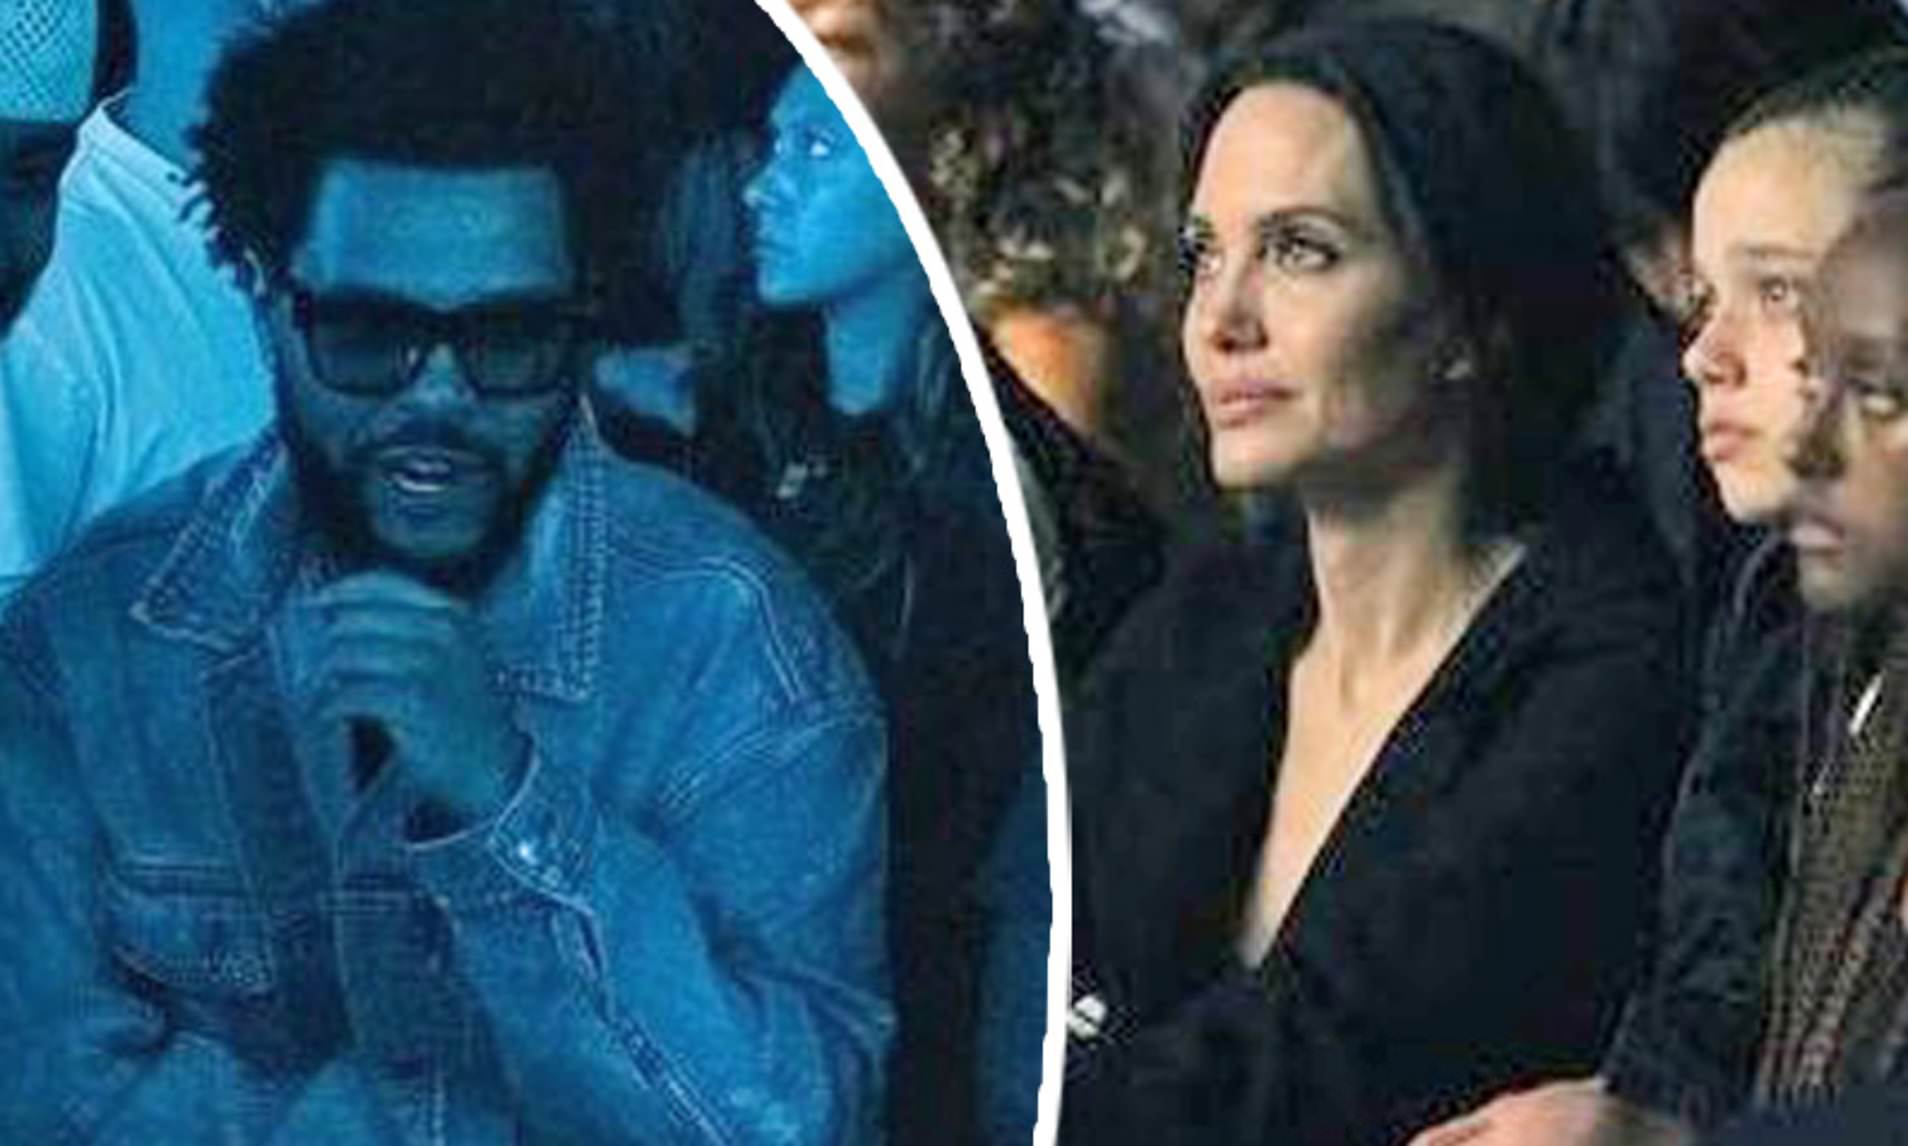 Включи уикенда. The Weeknd и Джоли. The Weeknd and Angelina Jolie. Weeknd и Анджелина. Рэпер the Weeknd и Анджелина Джоли.